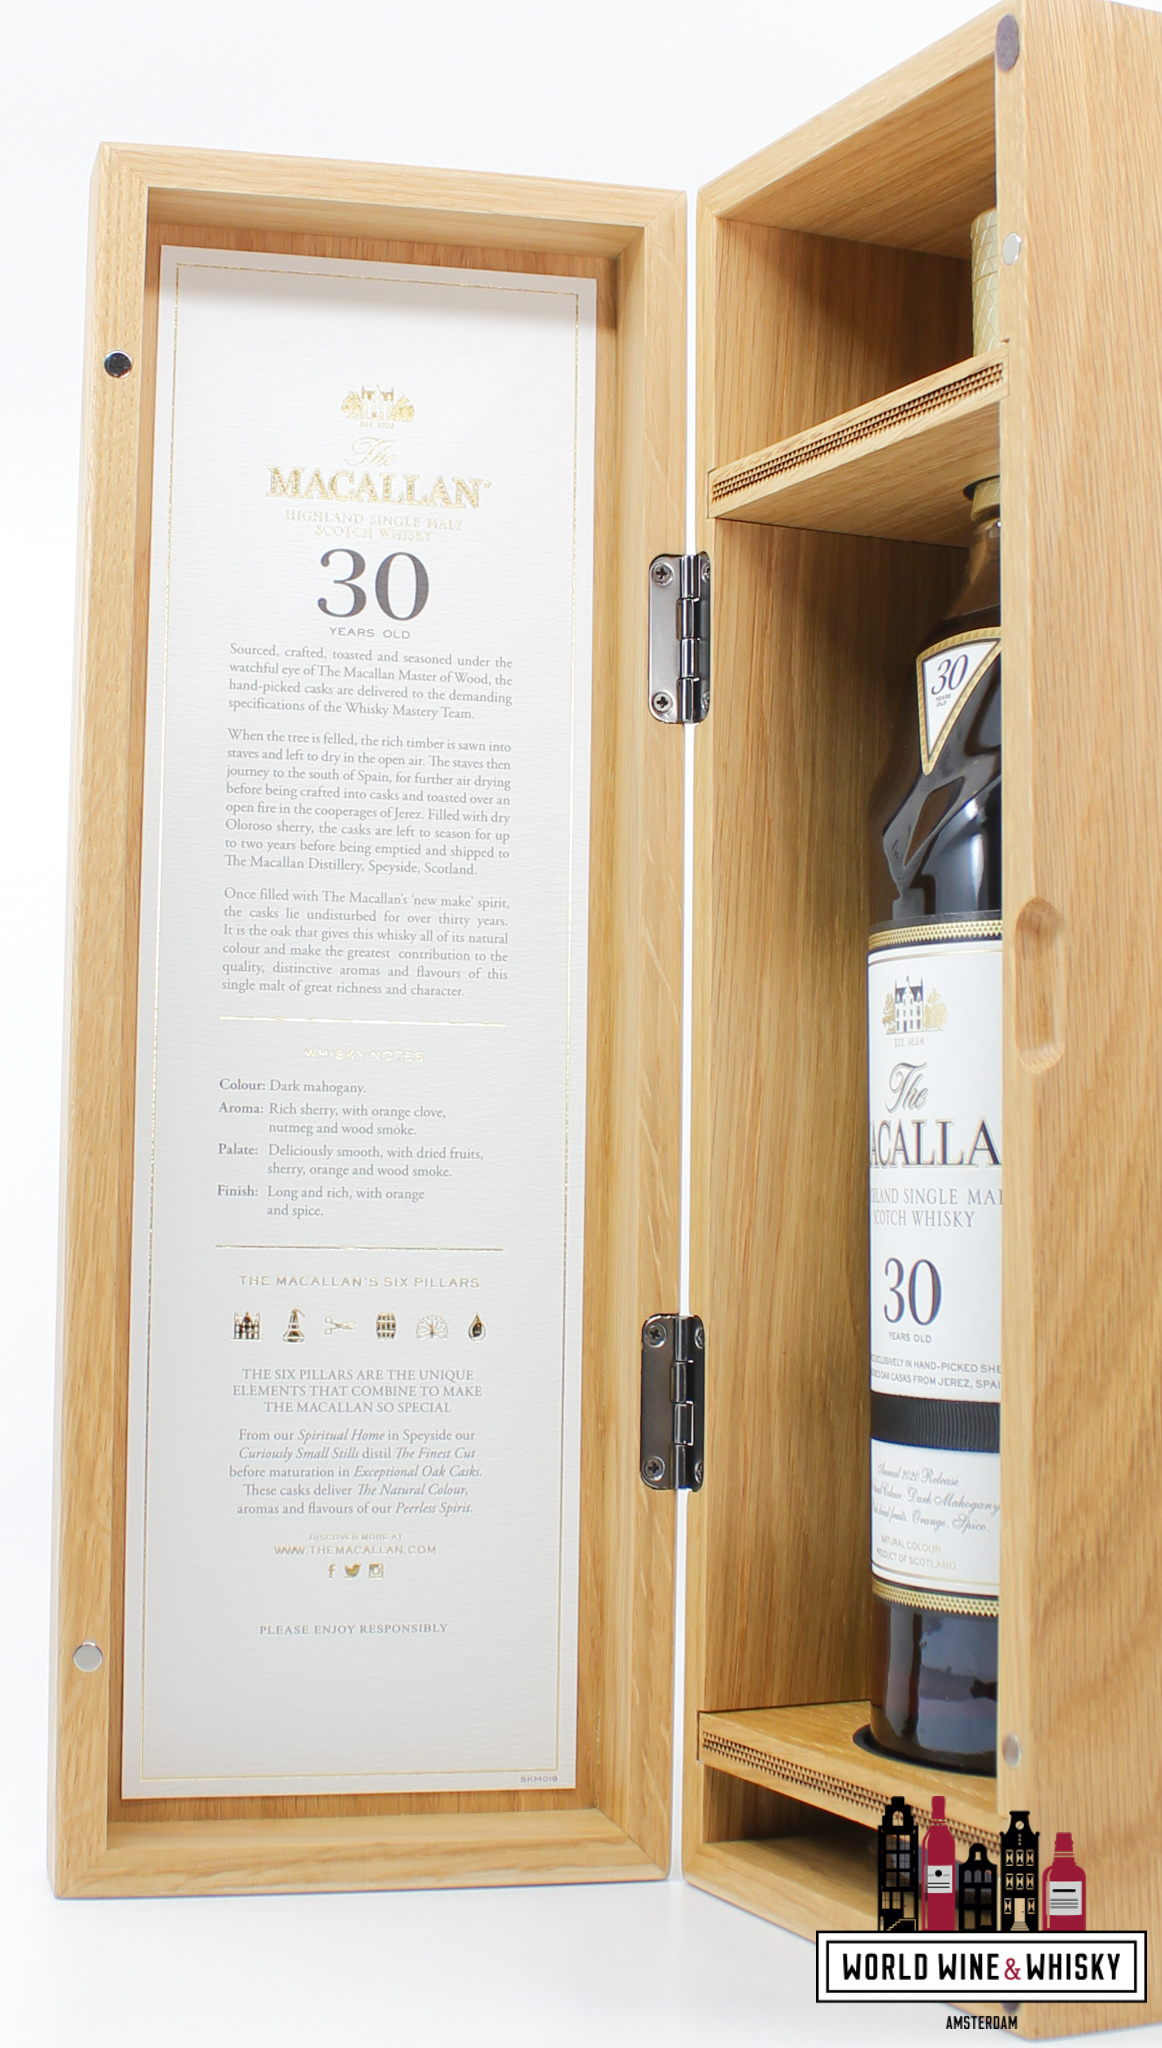 Macallan Macallan 30 Years Old 2020 Release - Sherry Oak Casks from Jerez 43% (in luxury wooden case)